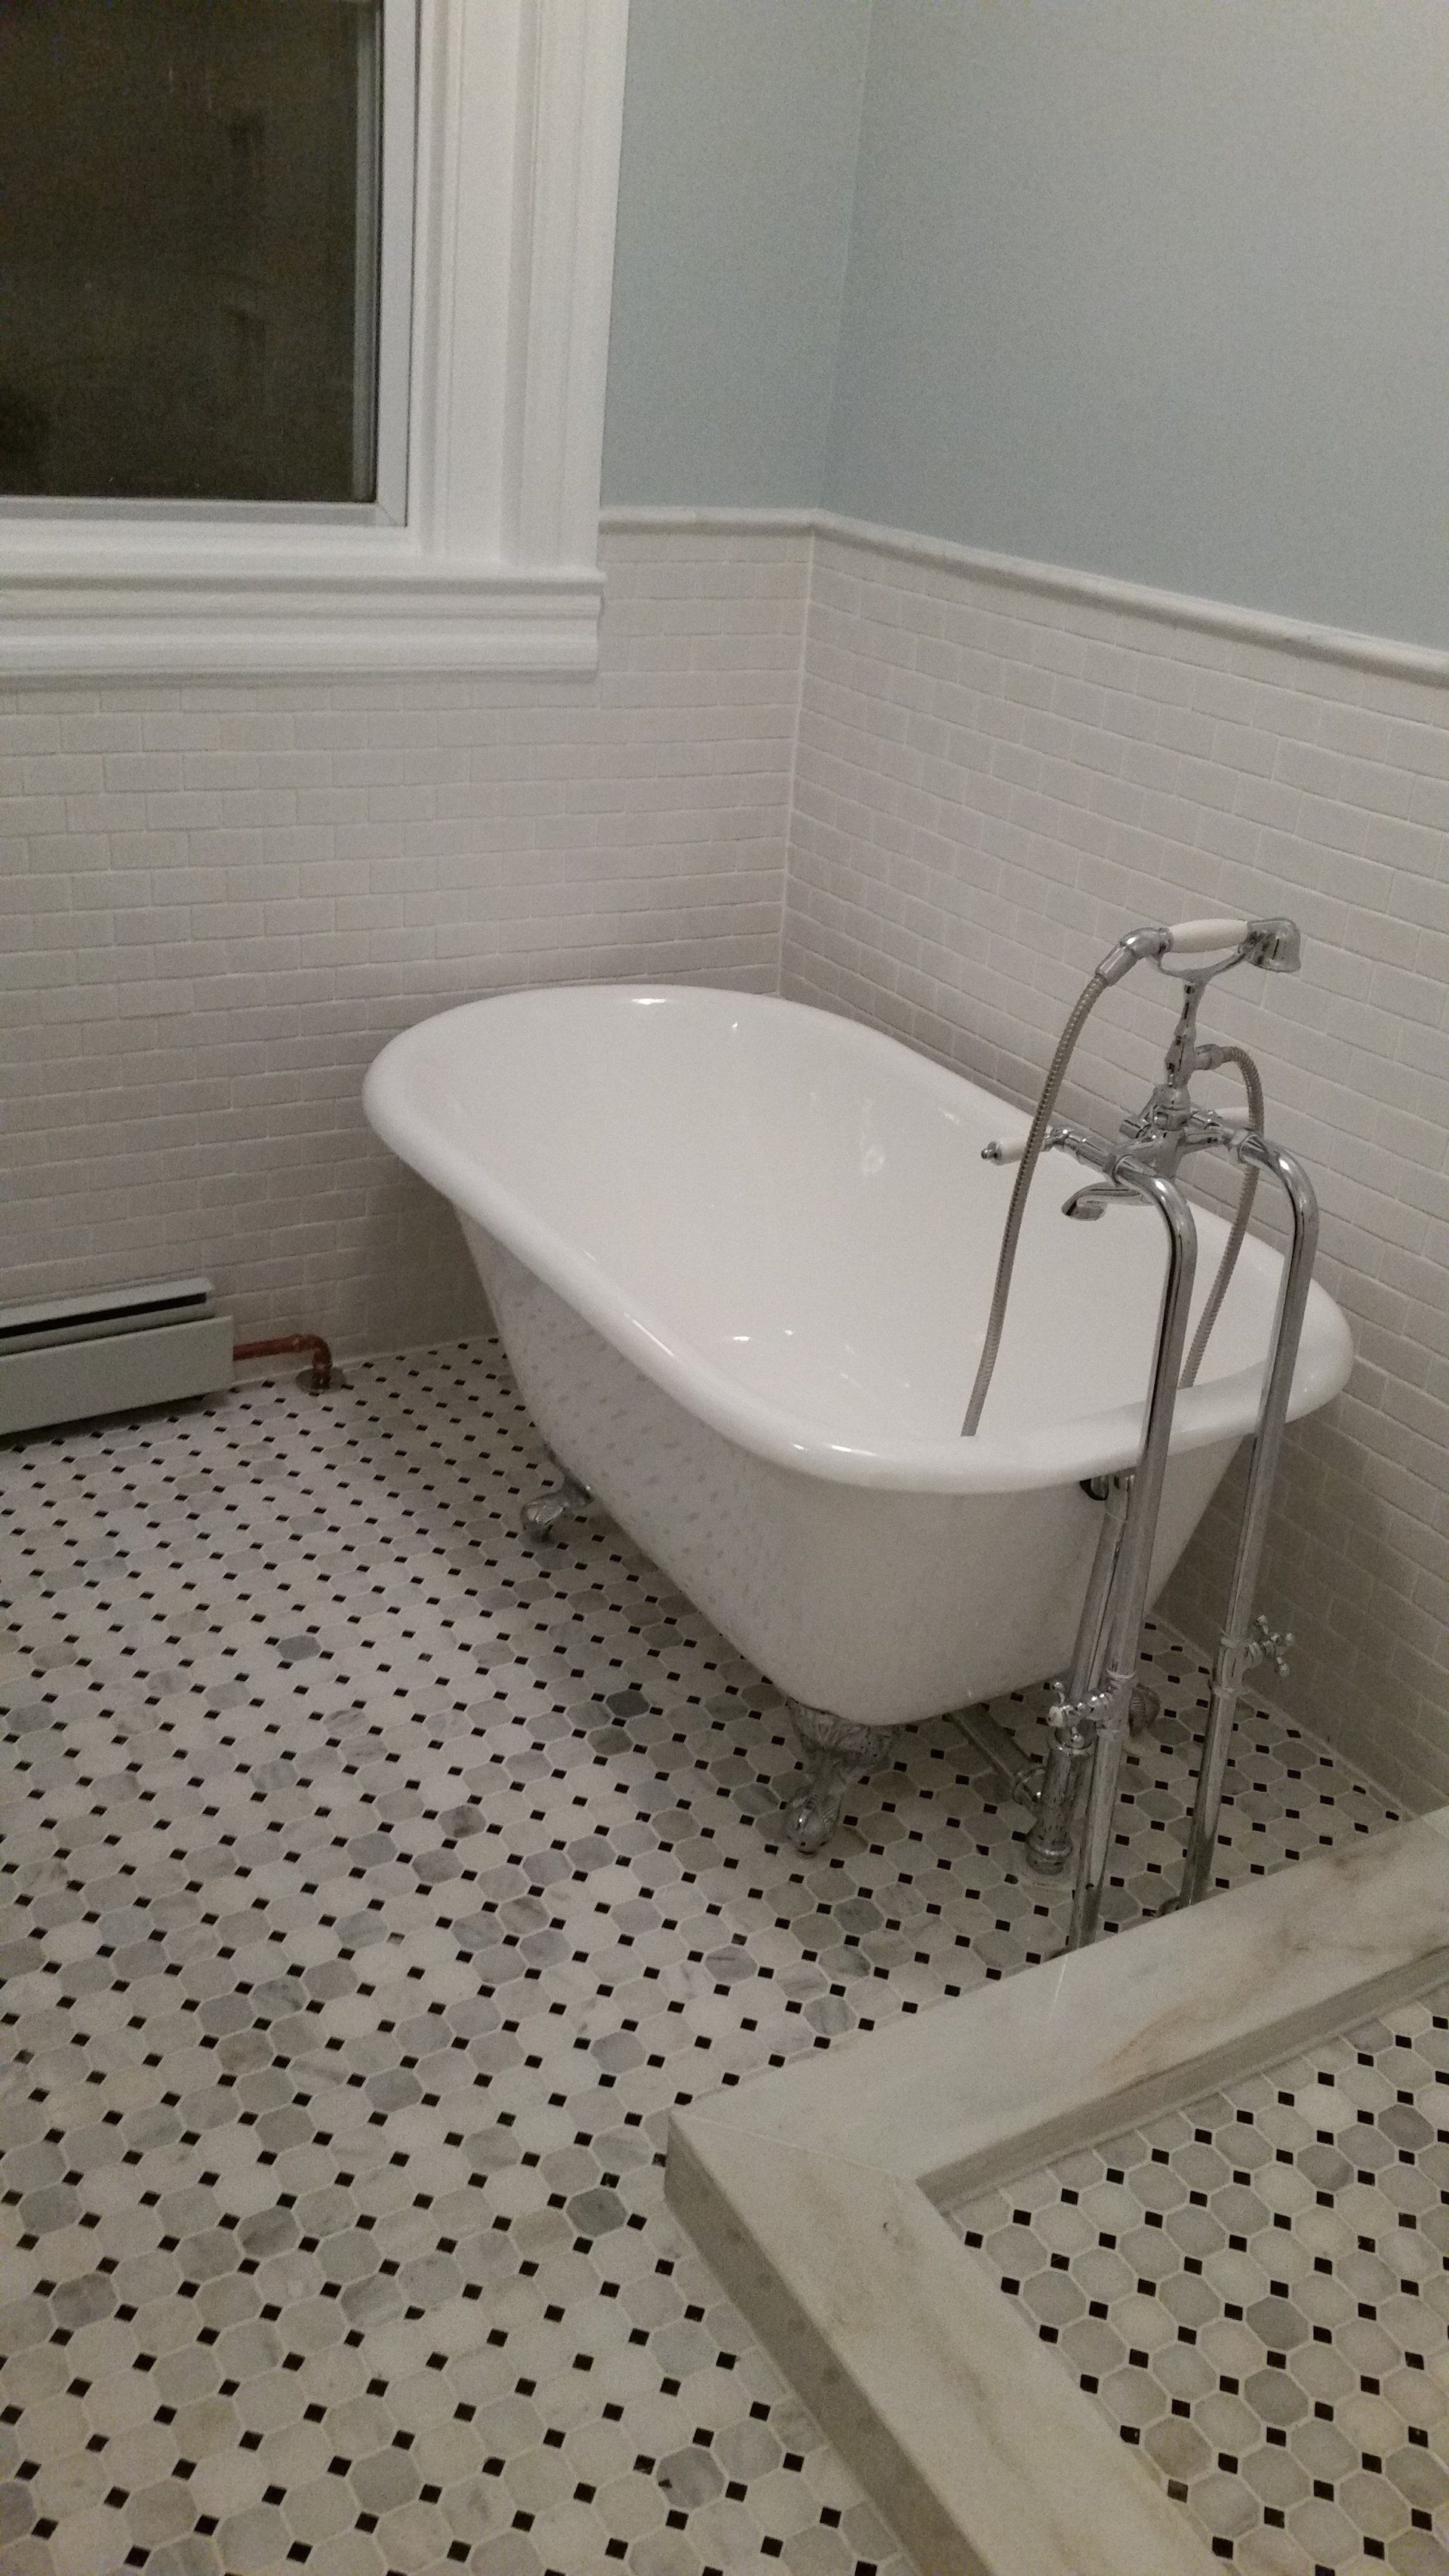 Newly installed bathtub